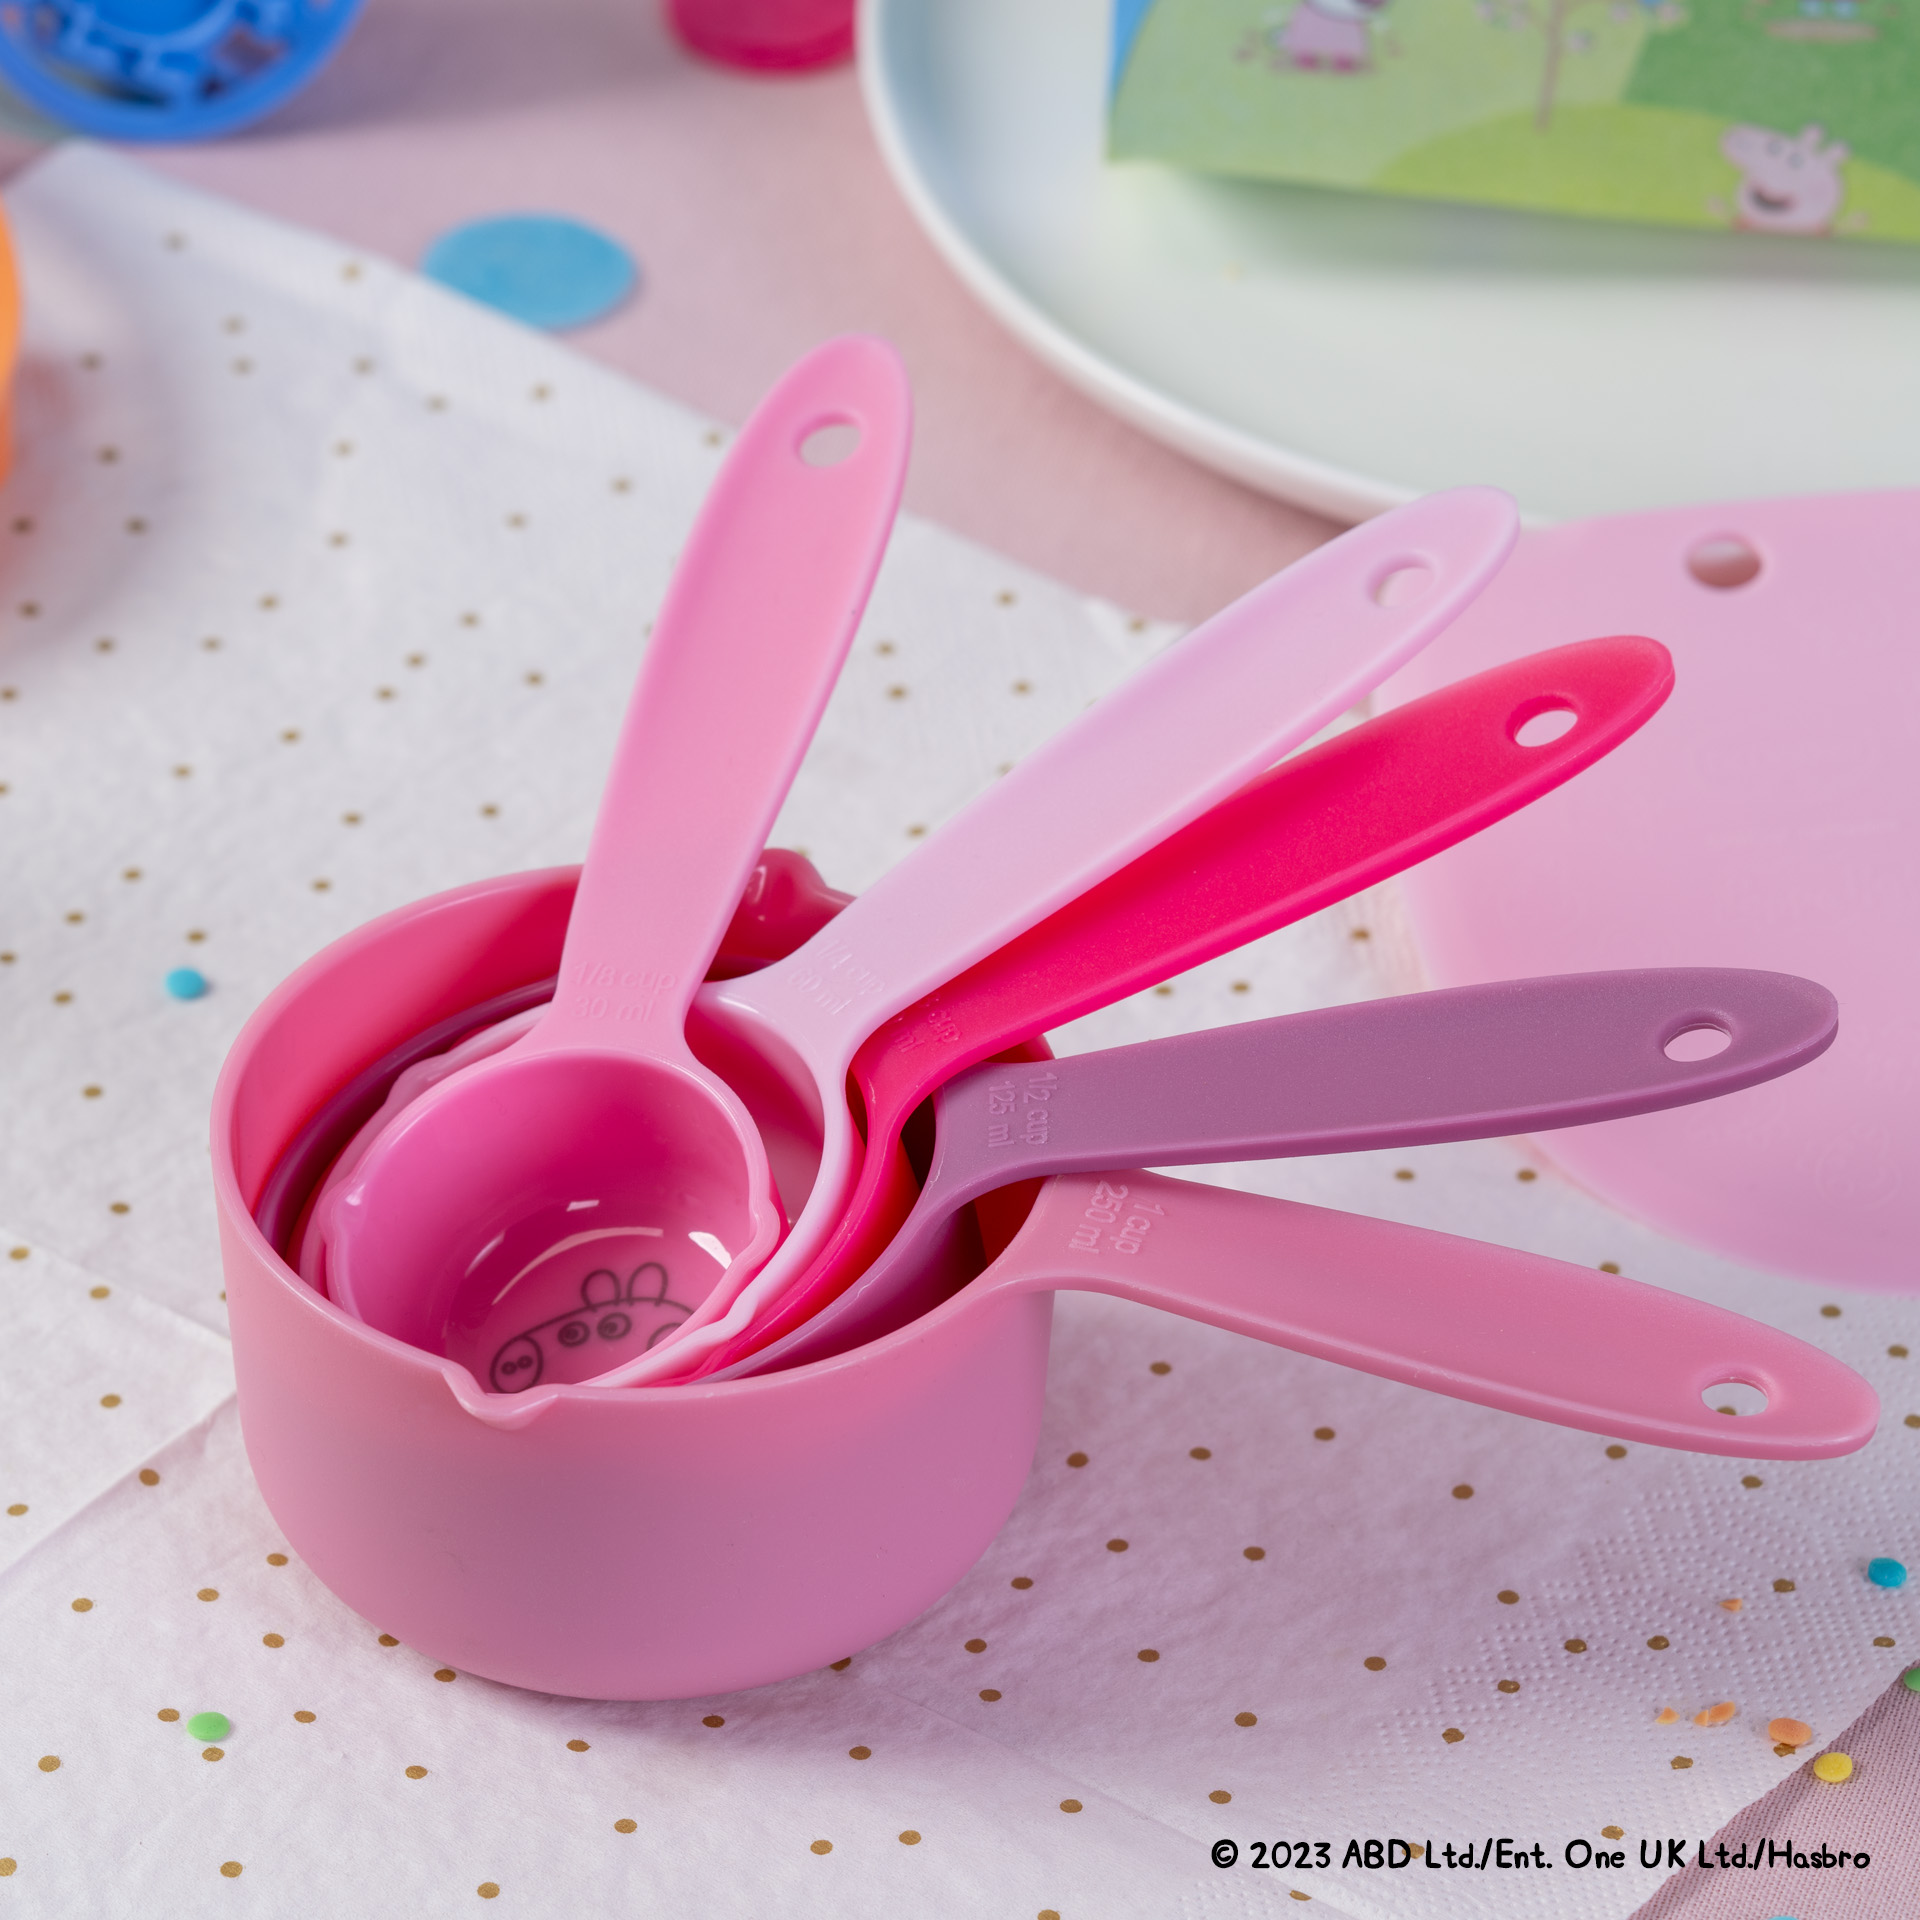 Dr. Oetker Set de Cucharas de Medición Peppa Pig – Juego de cucharas medidoras para niños, diseño de Peppa Pig, calidad superior, duradero y seguro para los niños